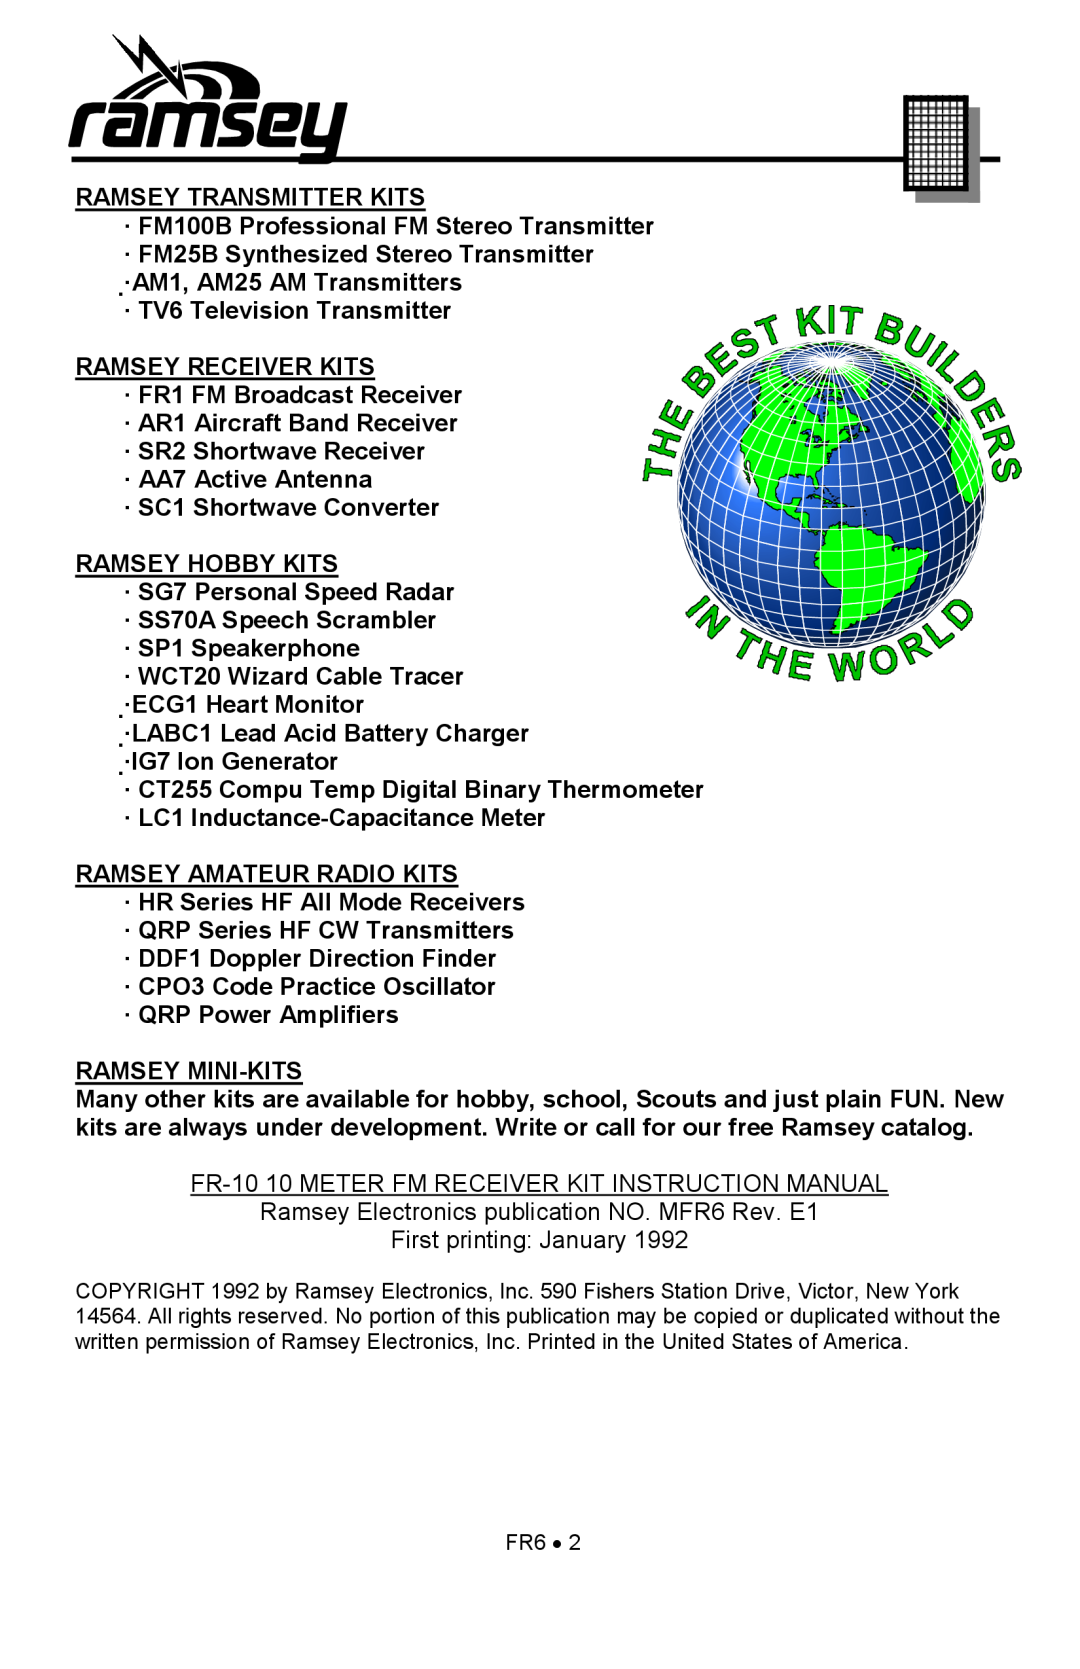 Ramsey Electronics FR6 manual Ramsey Transmitter Kits 